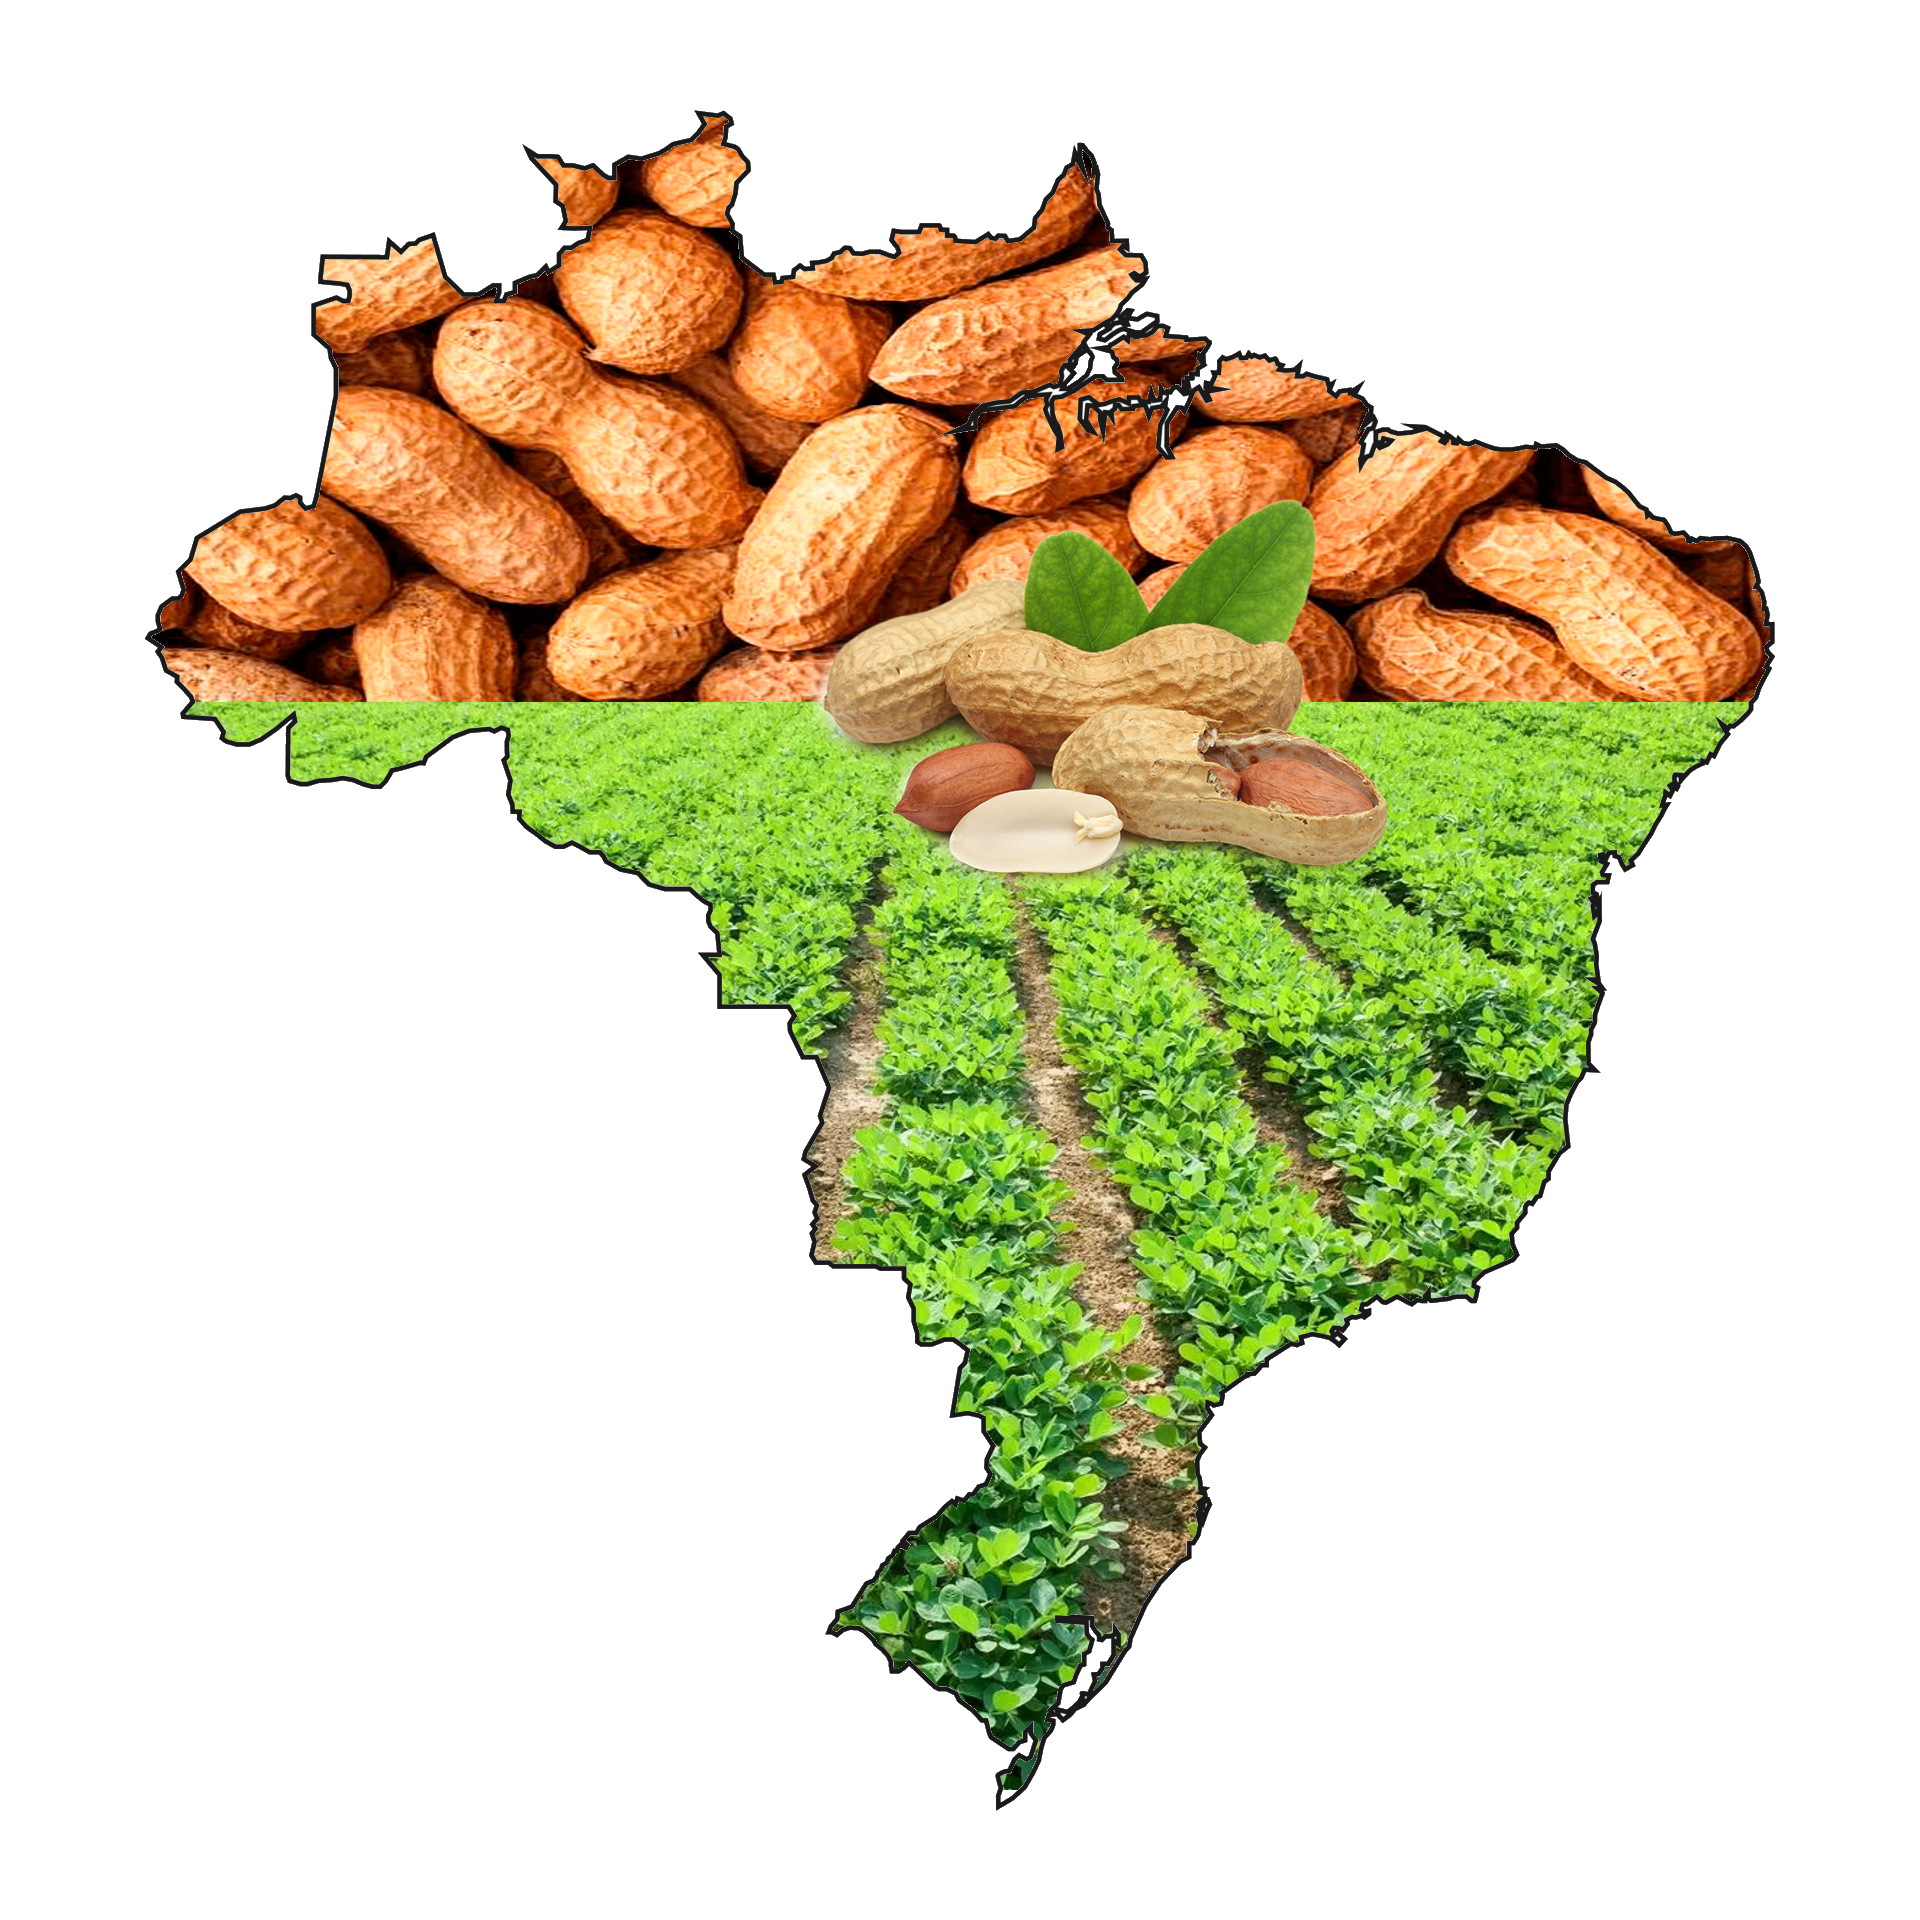 Os Maiores Produtores de Amendoim do Brasil